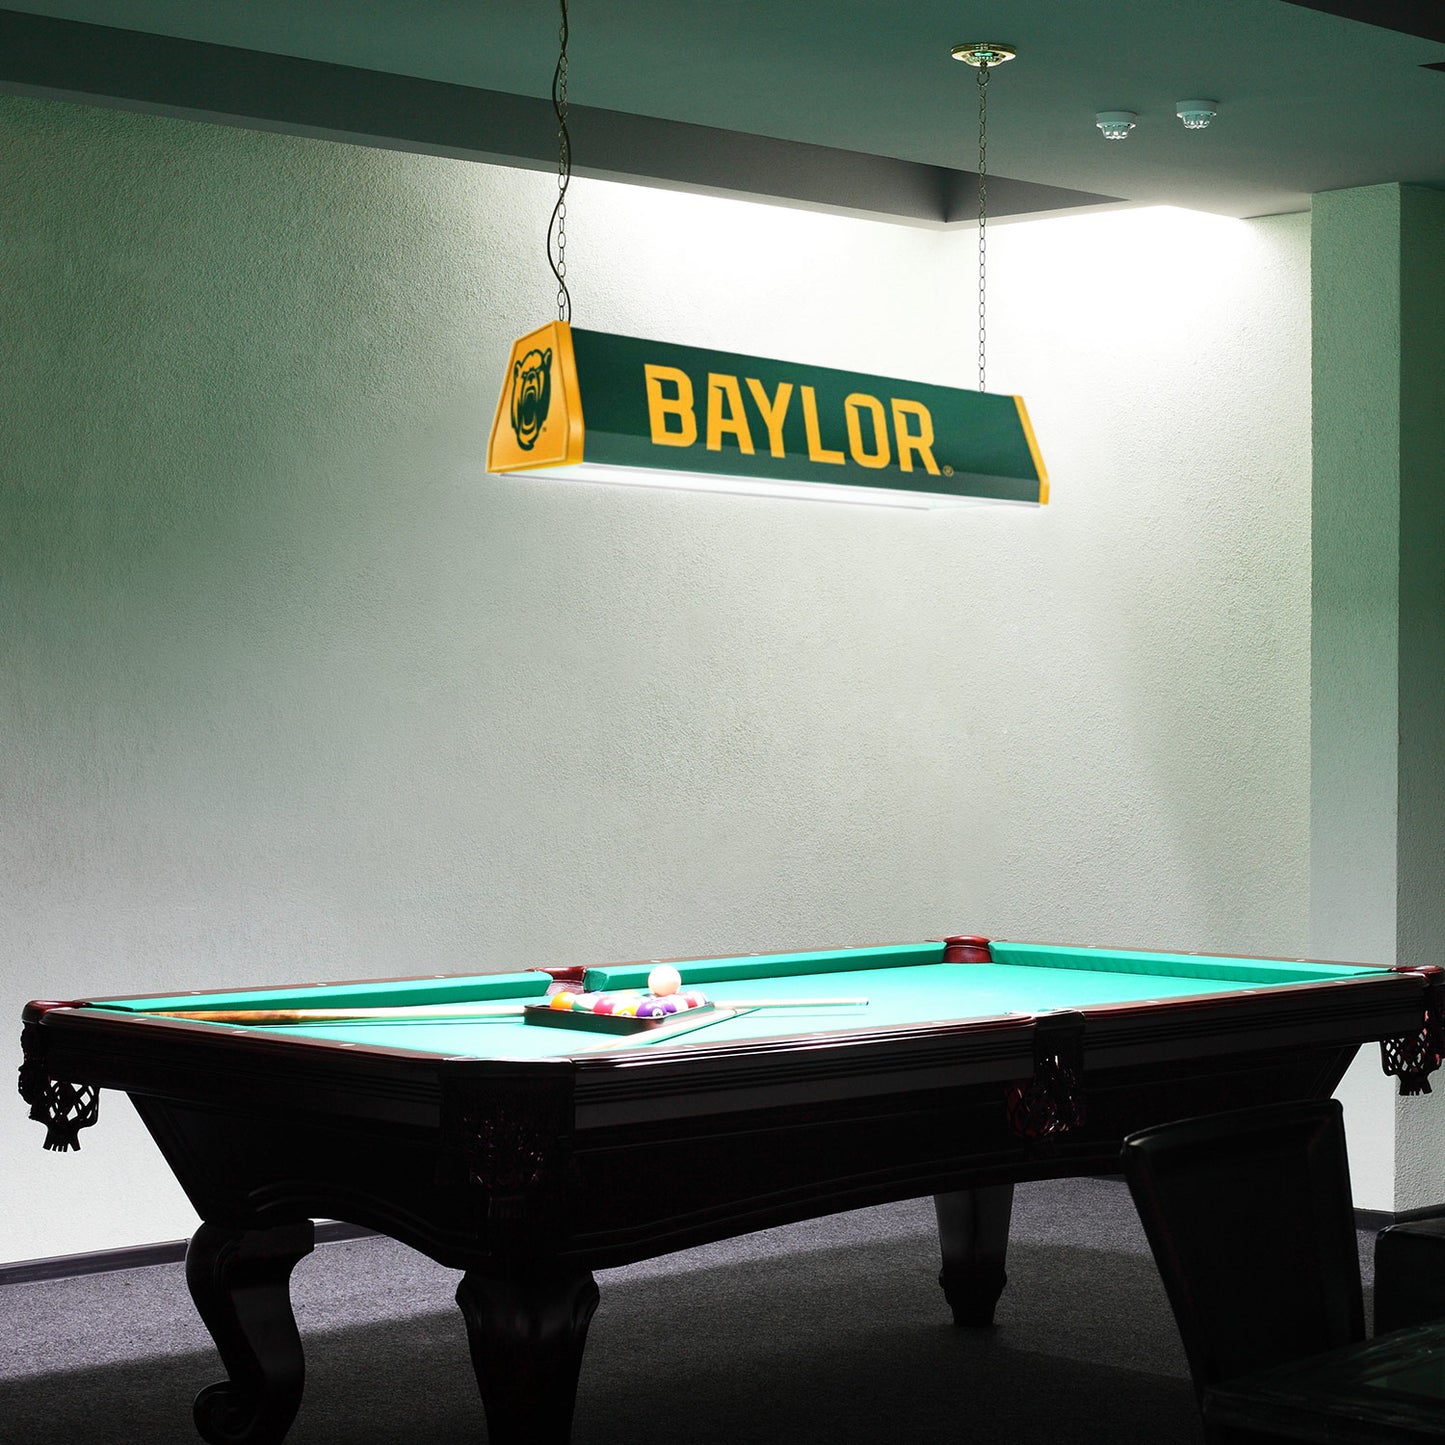 Baylor Bears Standard Pool Table Light Room View